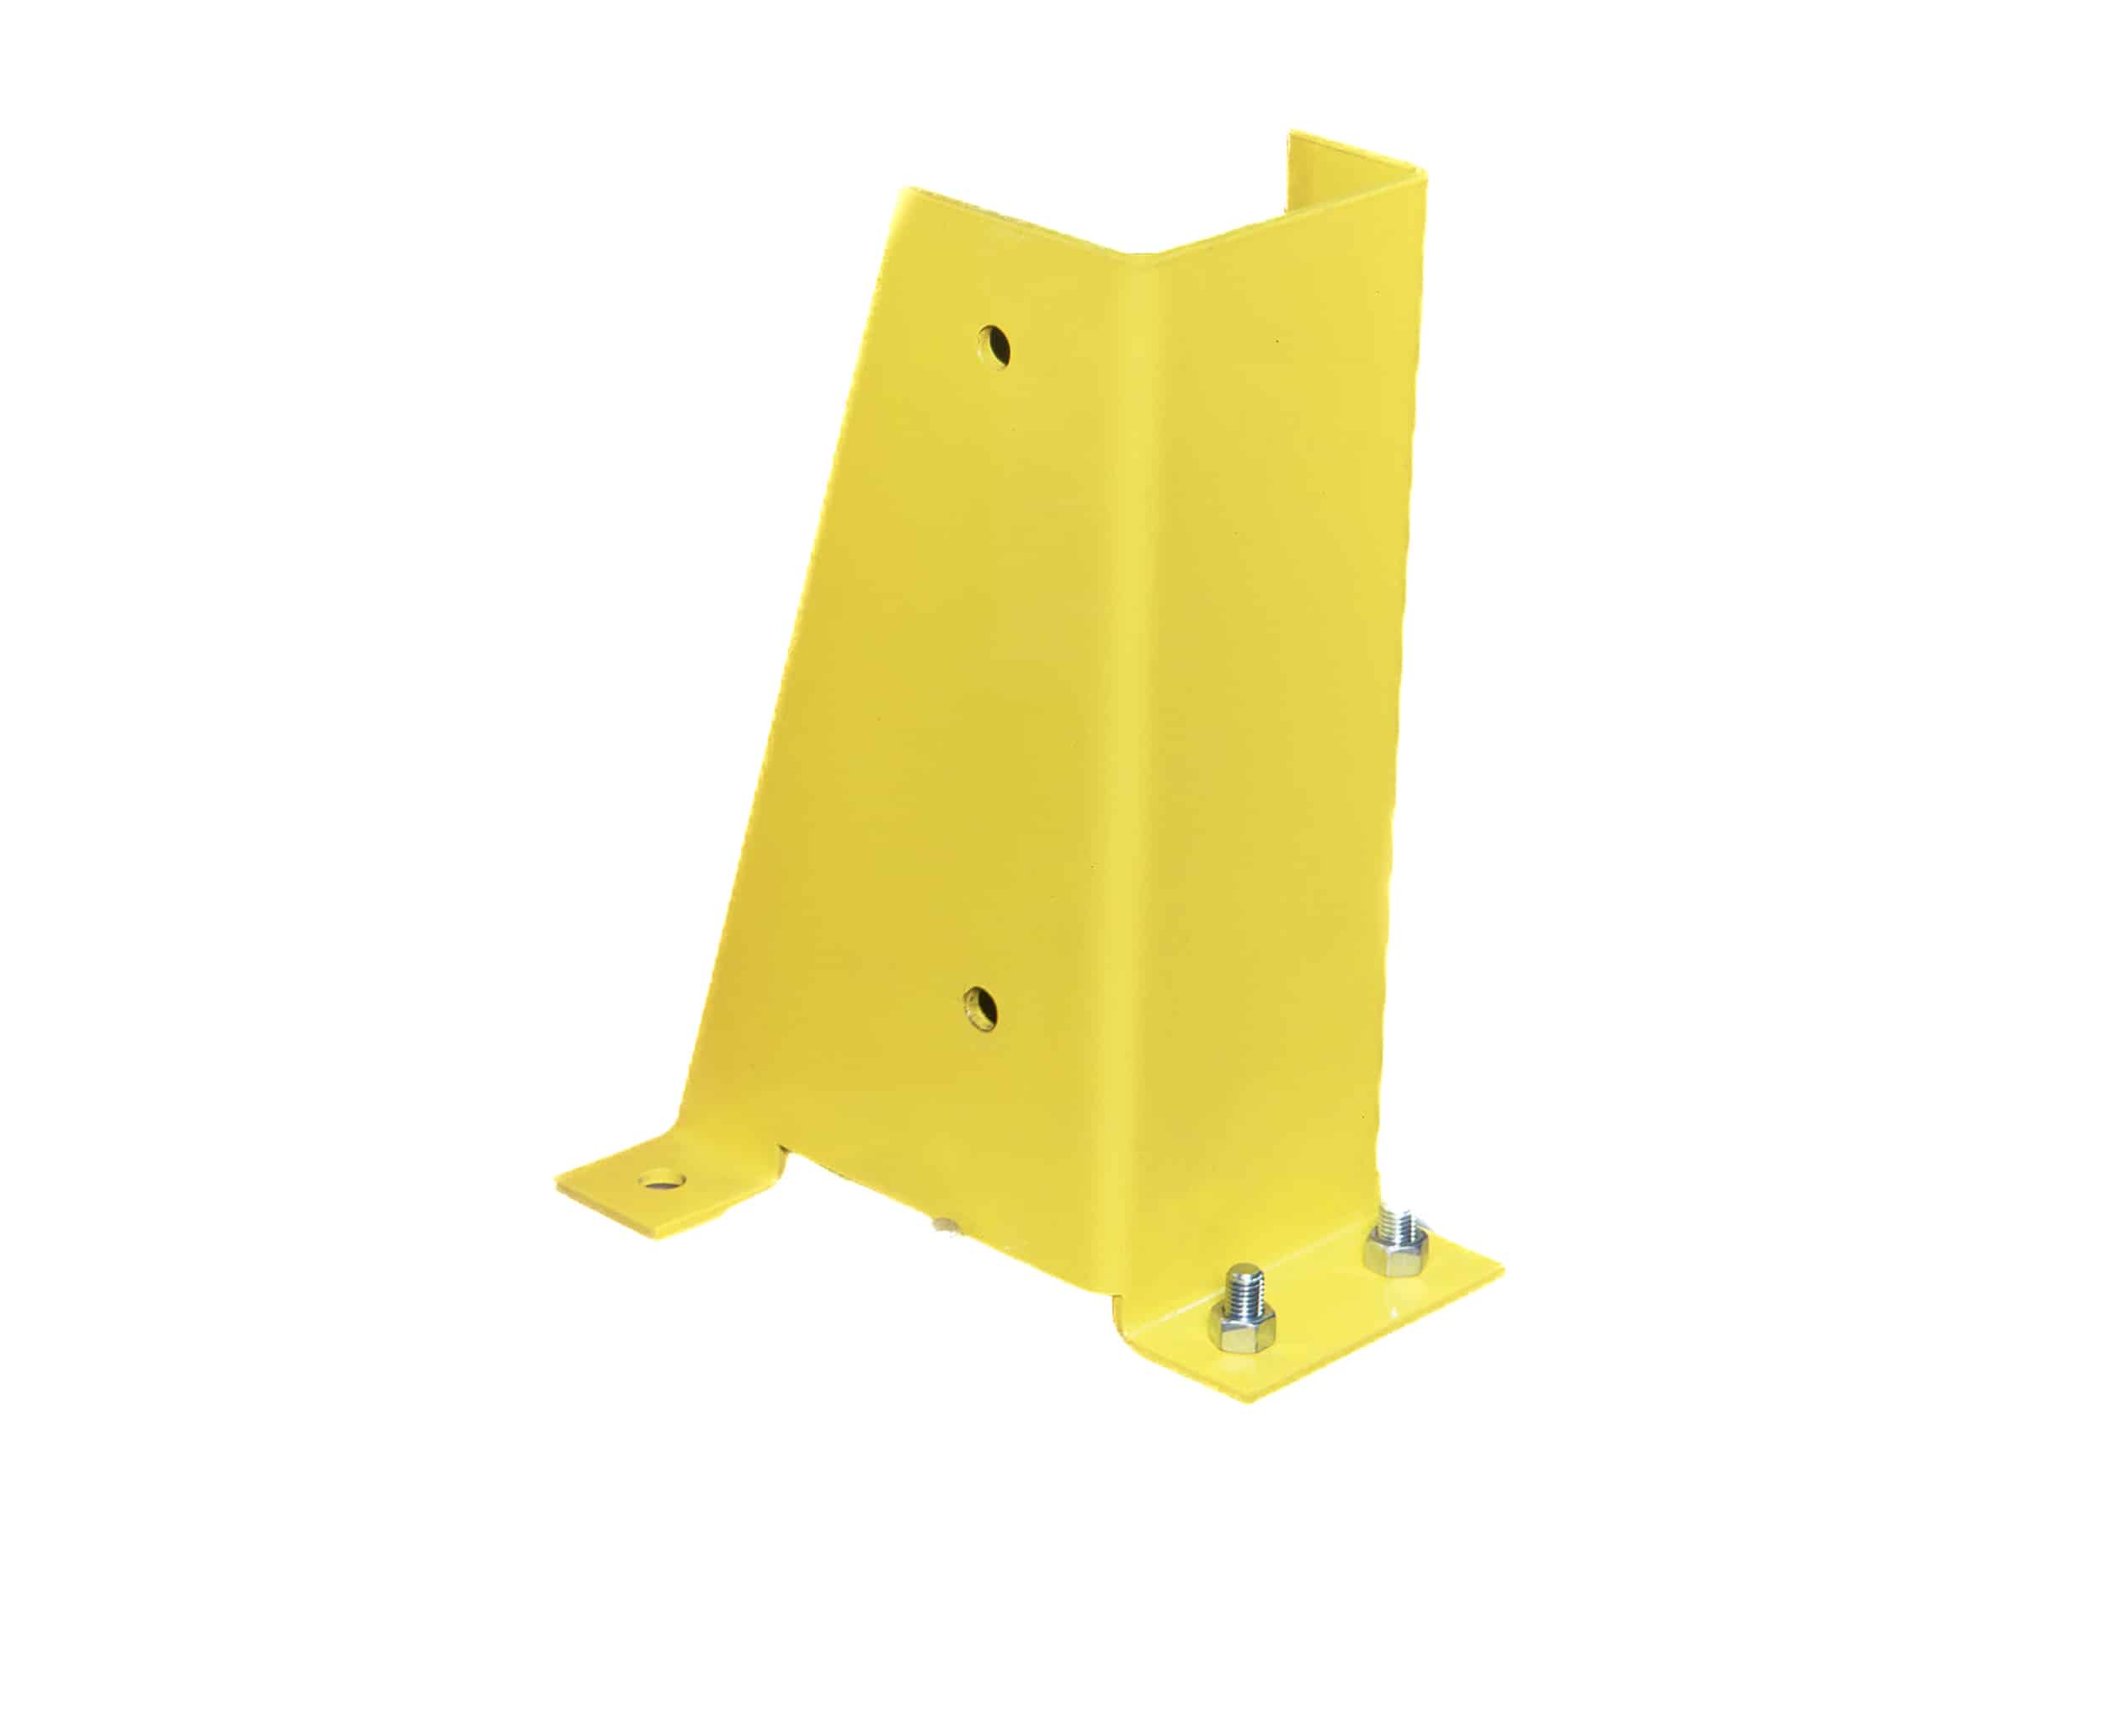 protección metálica para puntales tres lados en color amarillo.